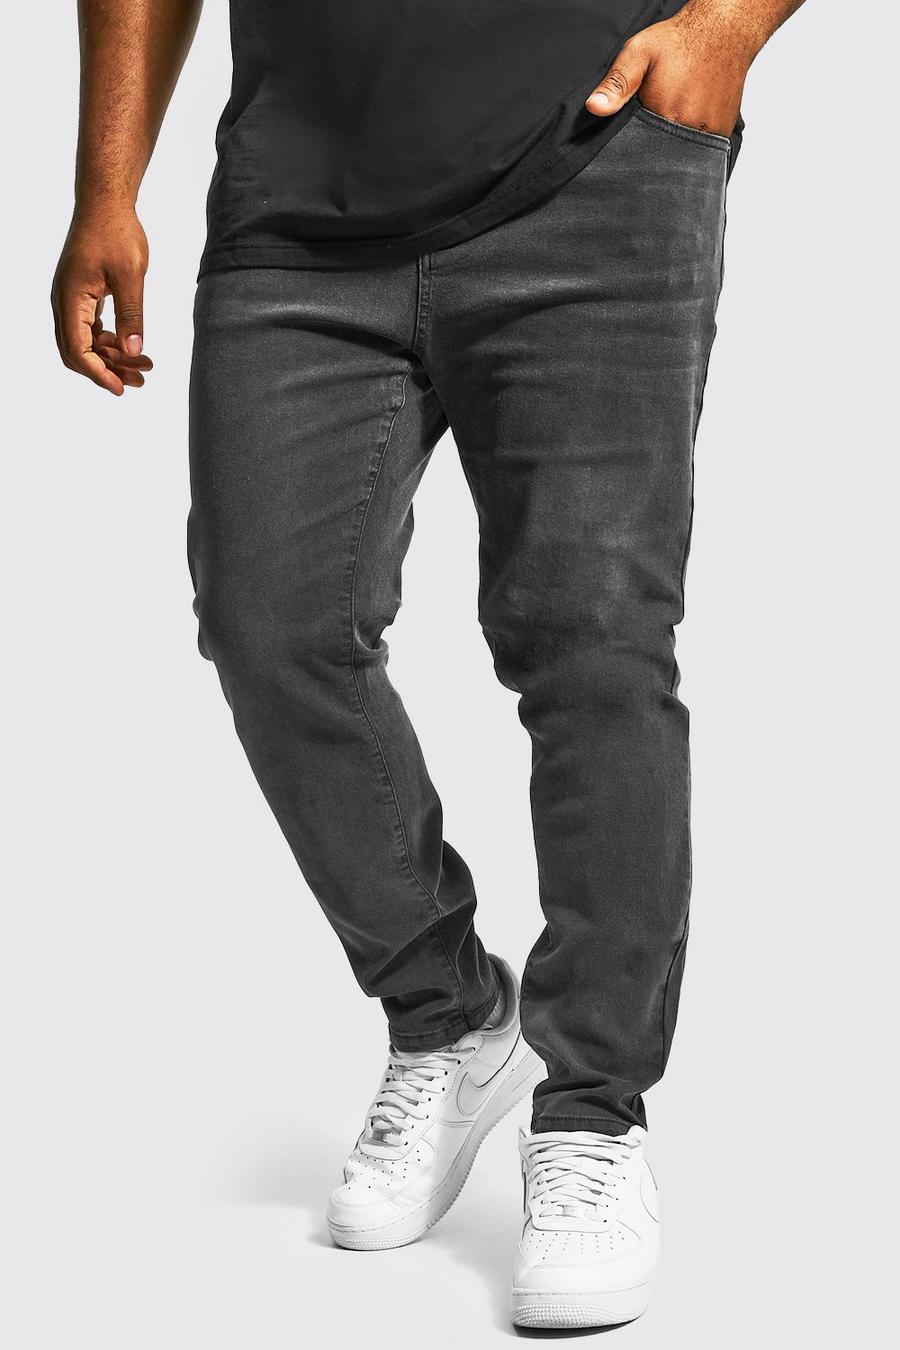 פחם grey סקיני ג'ינס נמתח בשילוב פוליאסטר ממוחזר, מידות גדולות